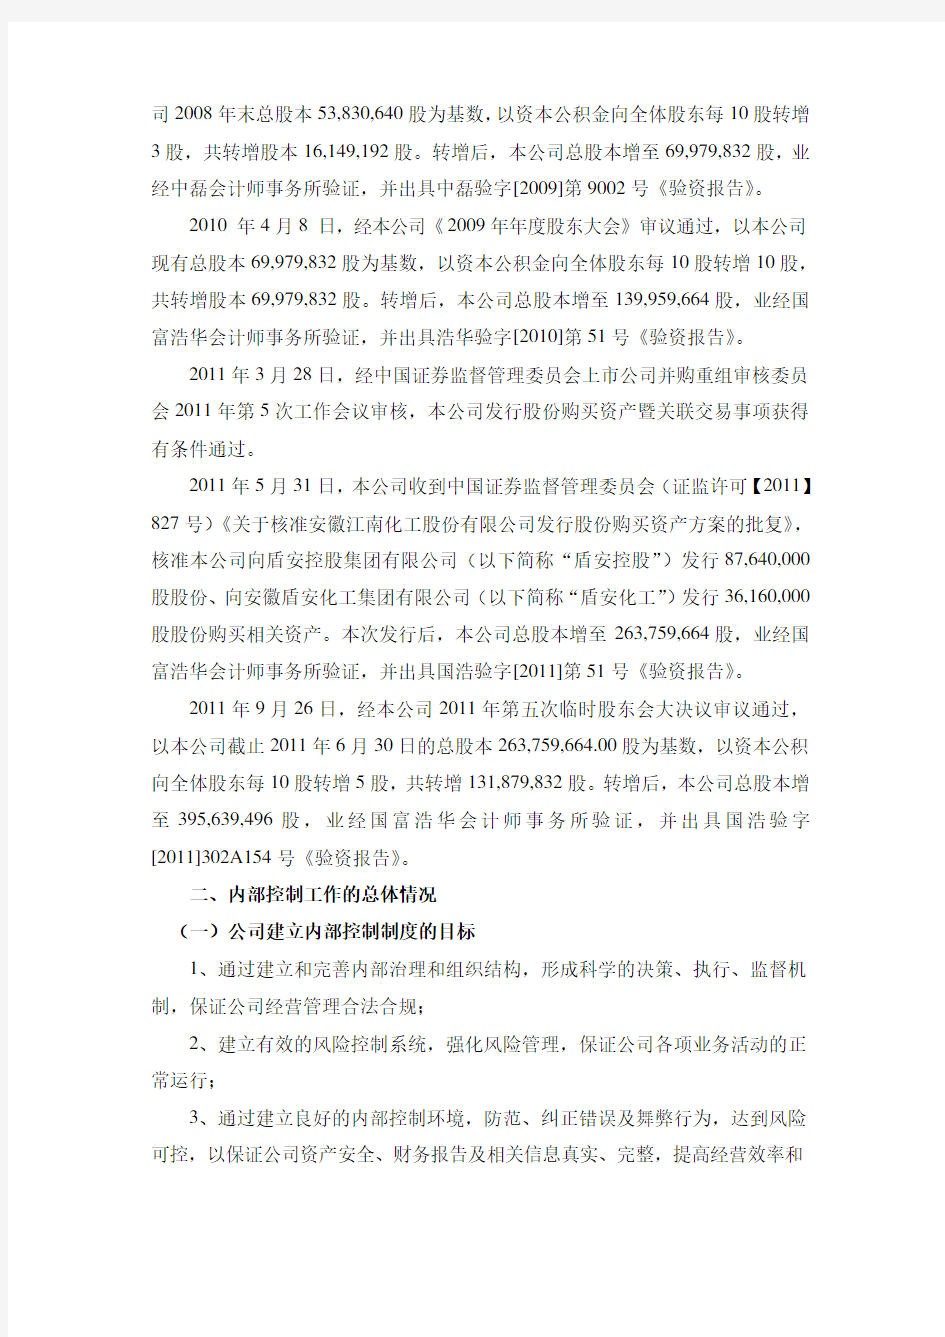 安徽江南化工股份有限公司 2012年度内部控制自我评价报告